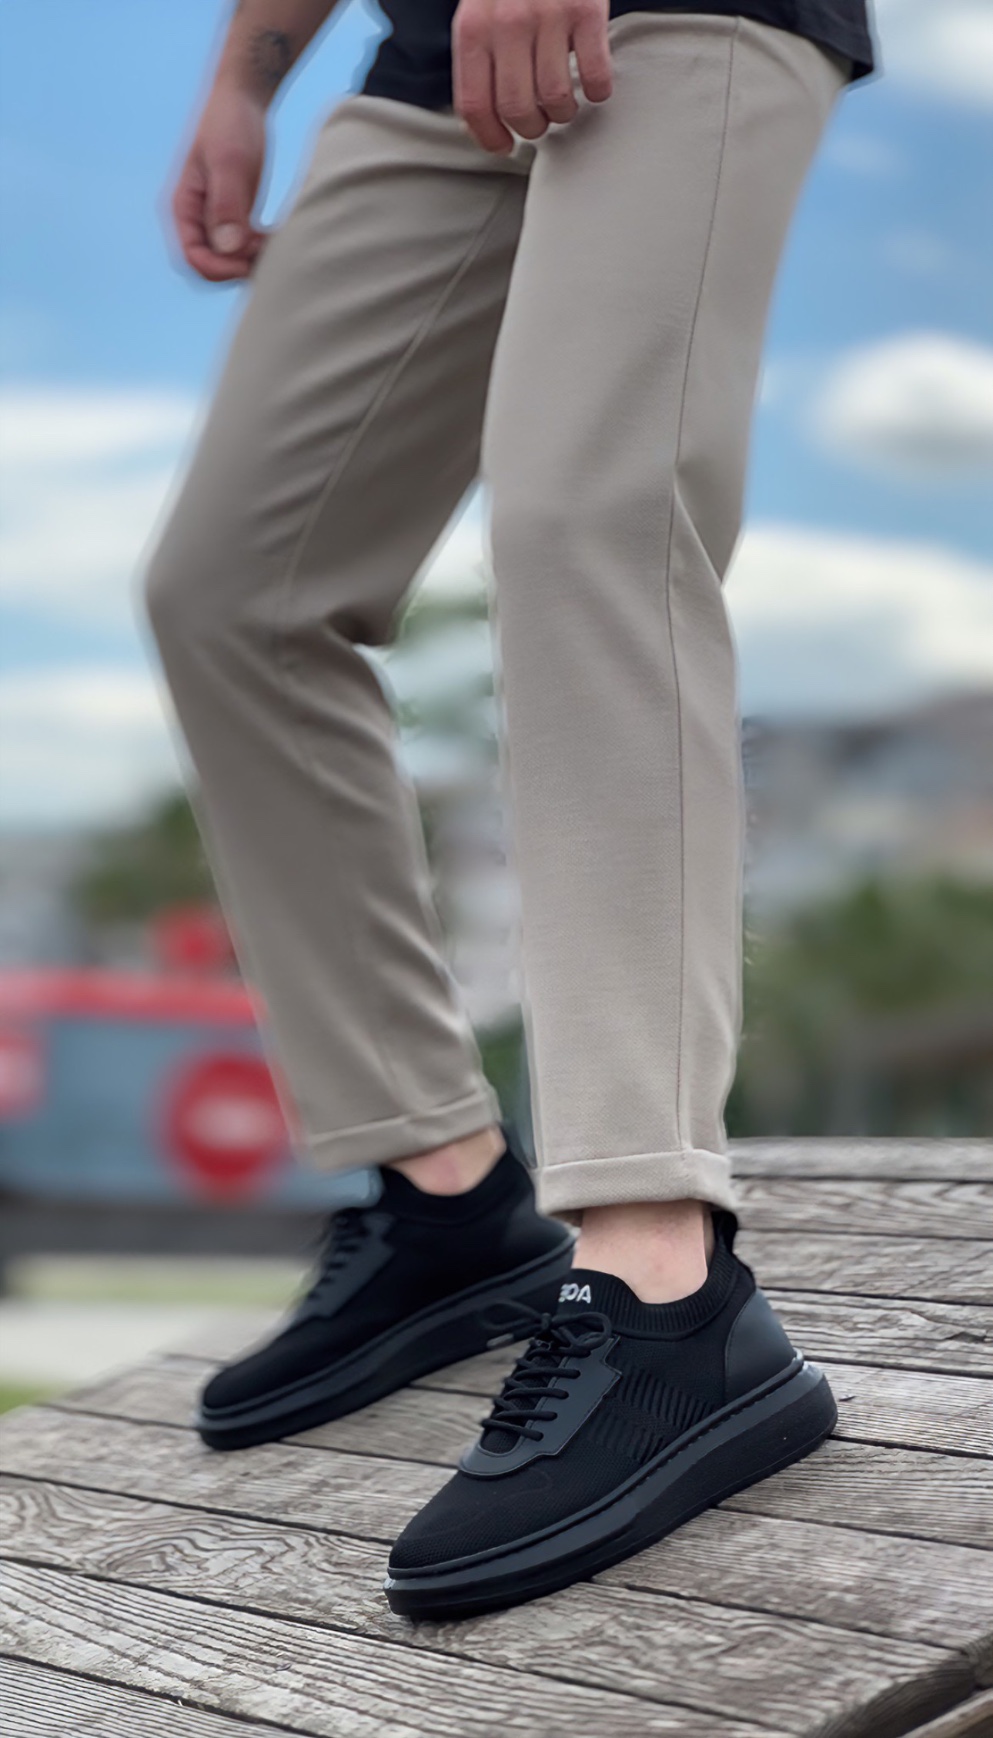 CLZ946 Özel Örme Triko Tarz Siyah Renk Siyah Taban Spor Ayakkabı